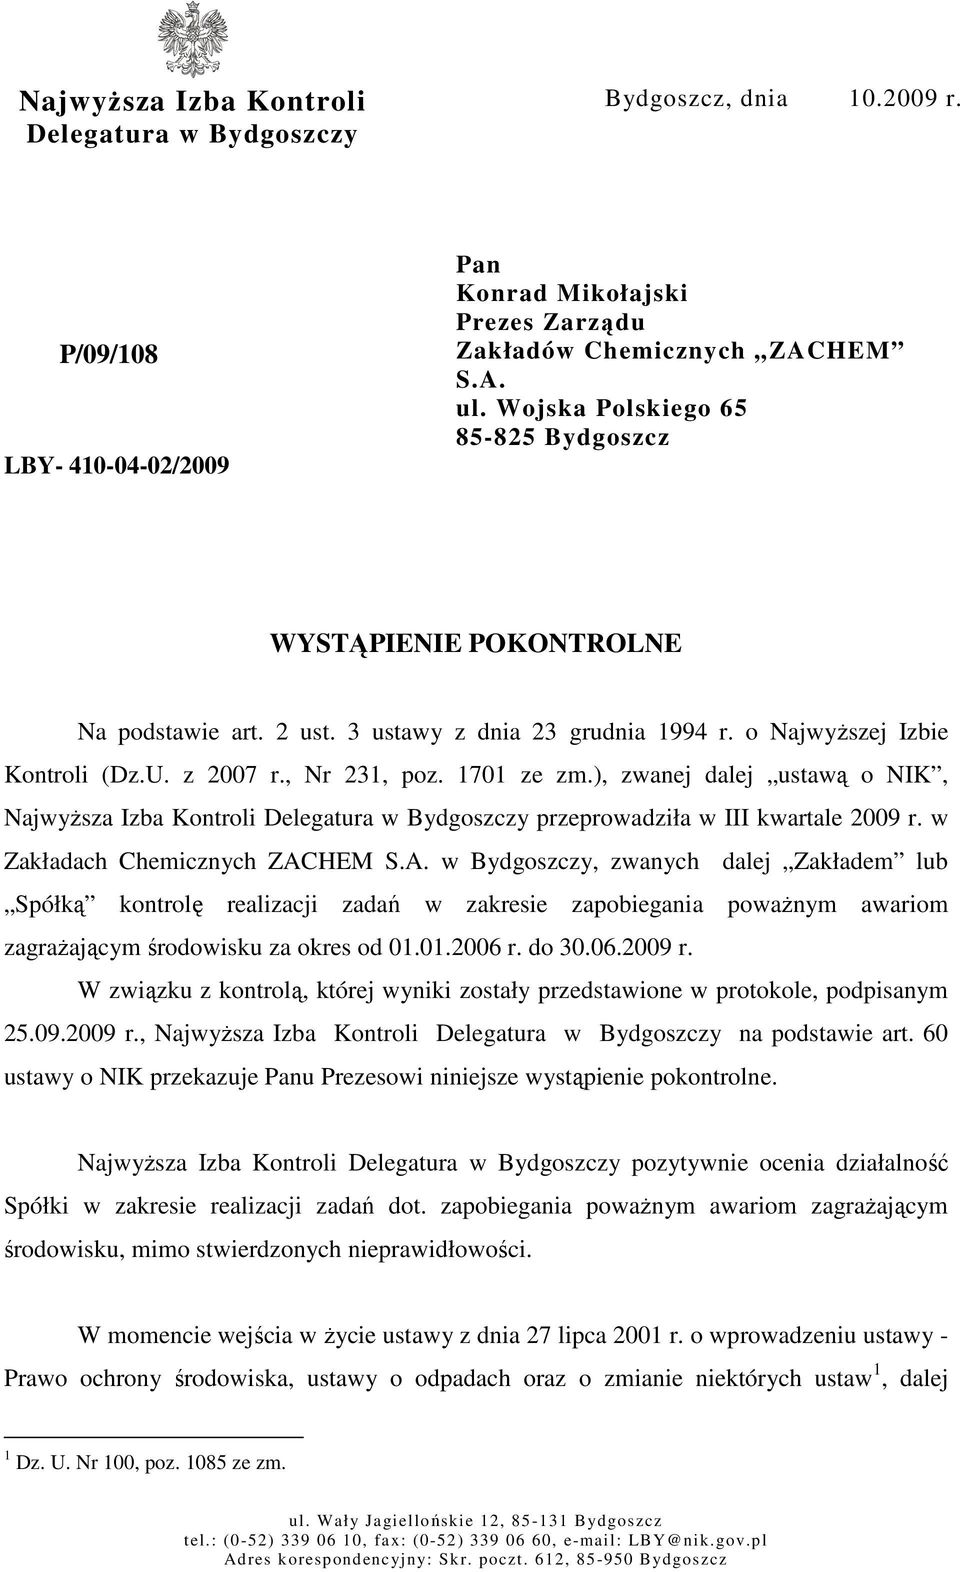 ), zwanej dalej ustawą o NIK, NajwyŜsza Izba Kontroli Delegatura w Bydgoszczy przeprowadziła w III kwartale 2009 r. w Zakładach Chemicznych ZAC